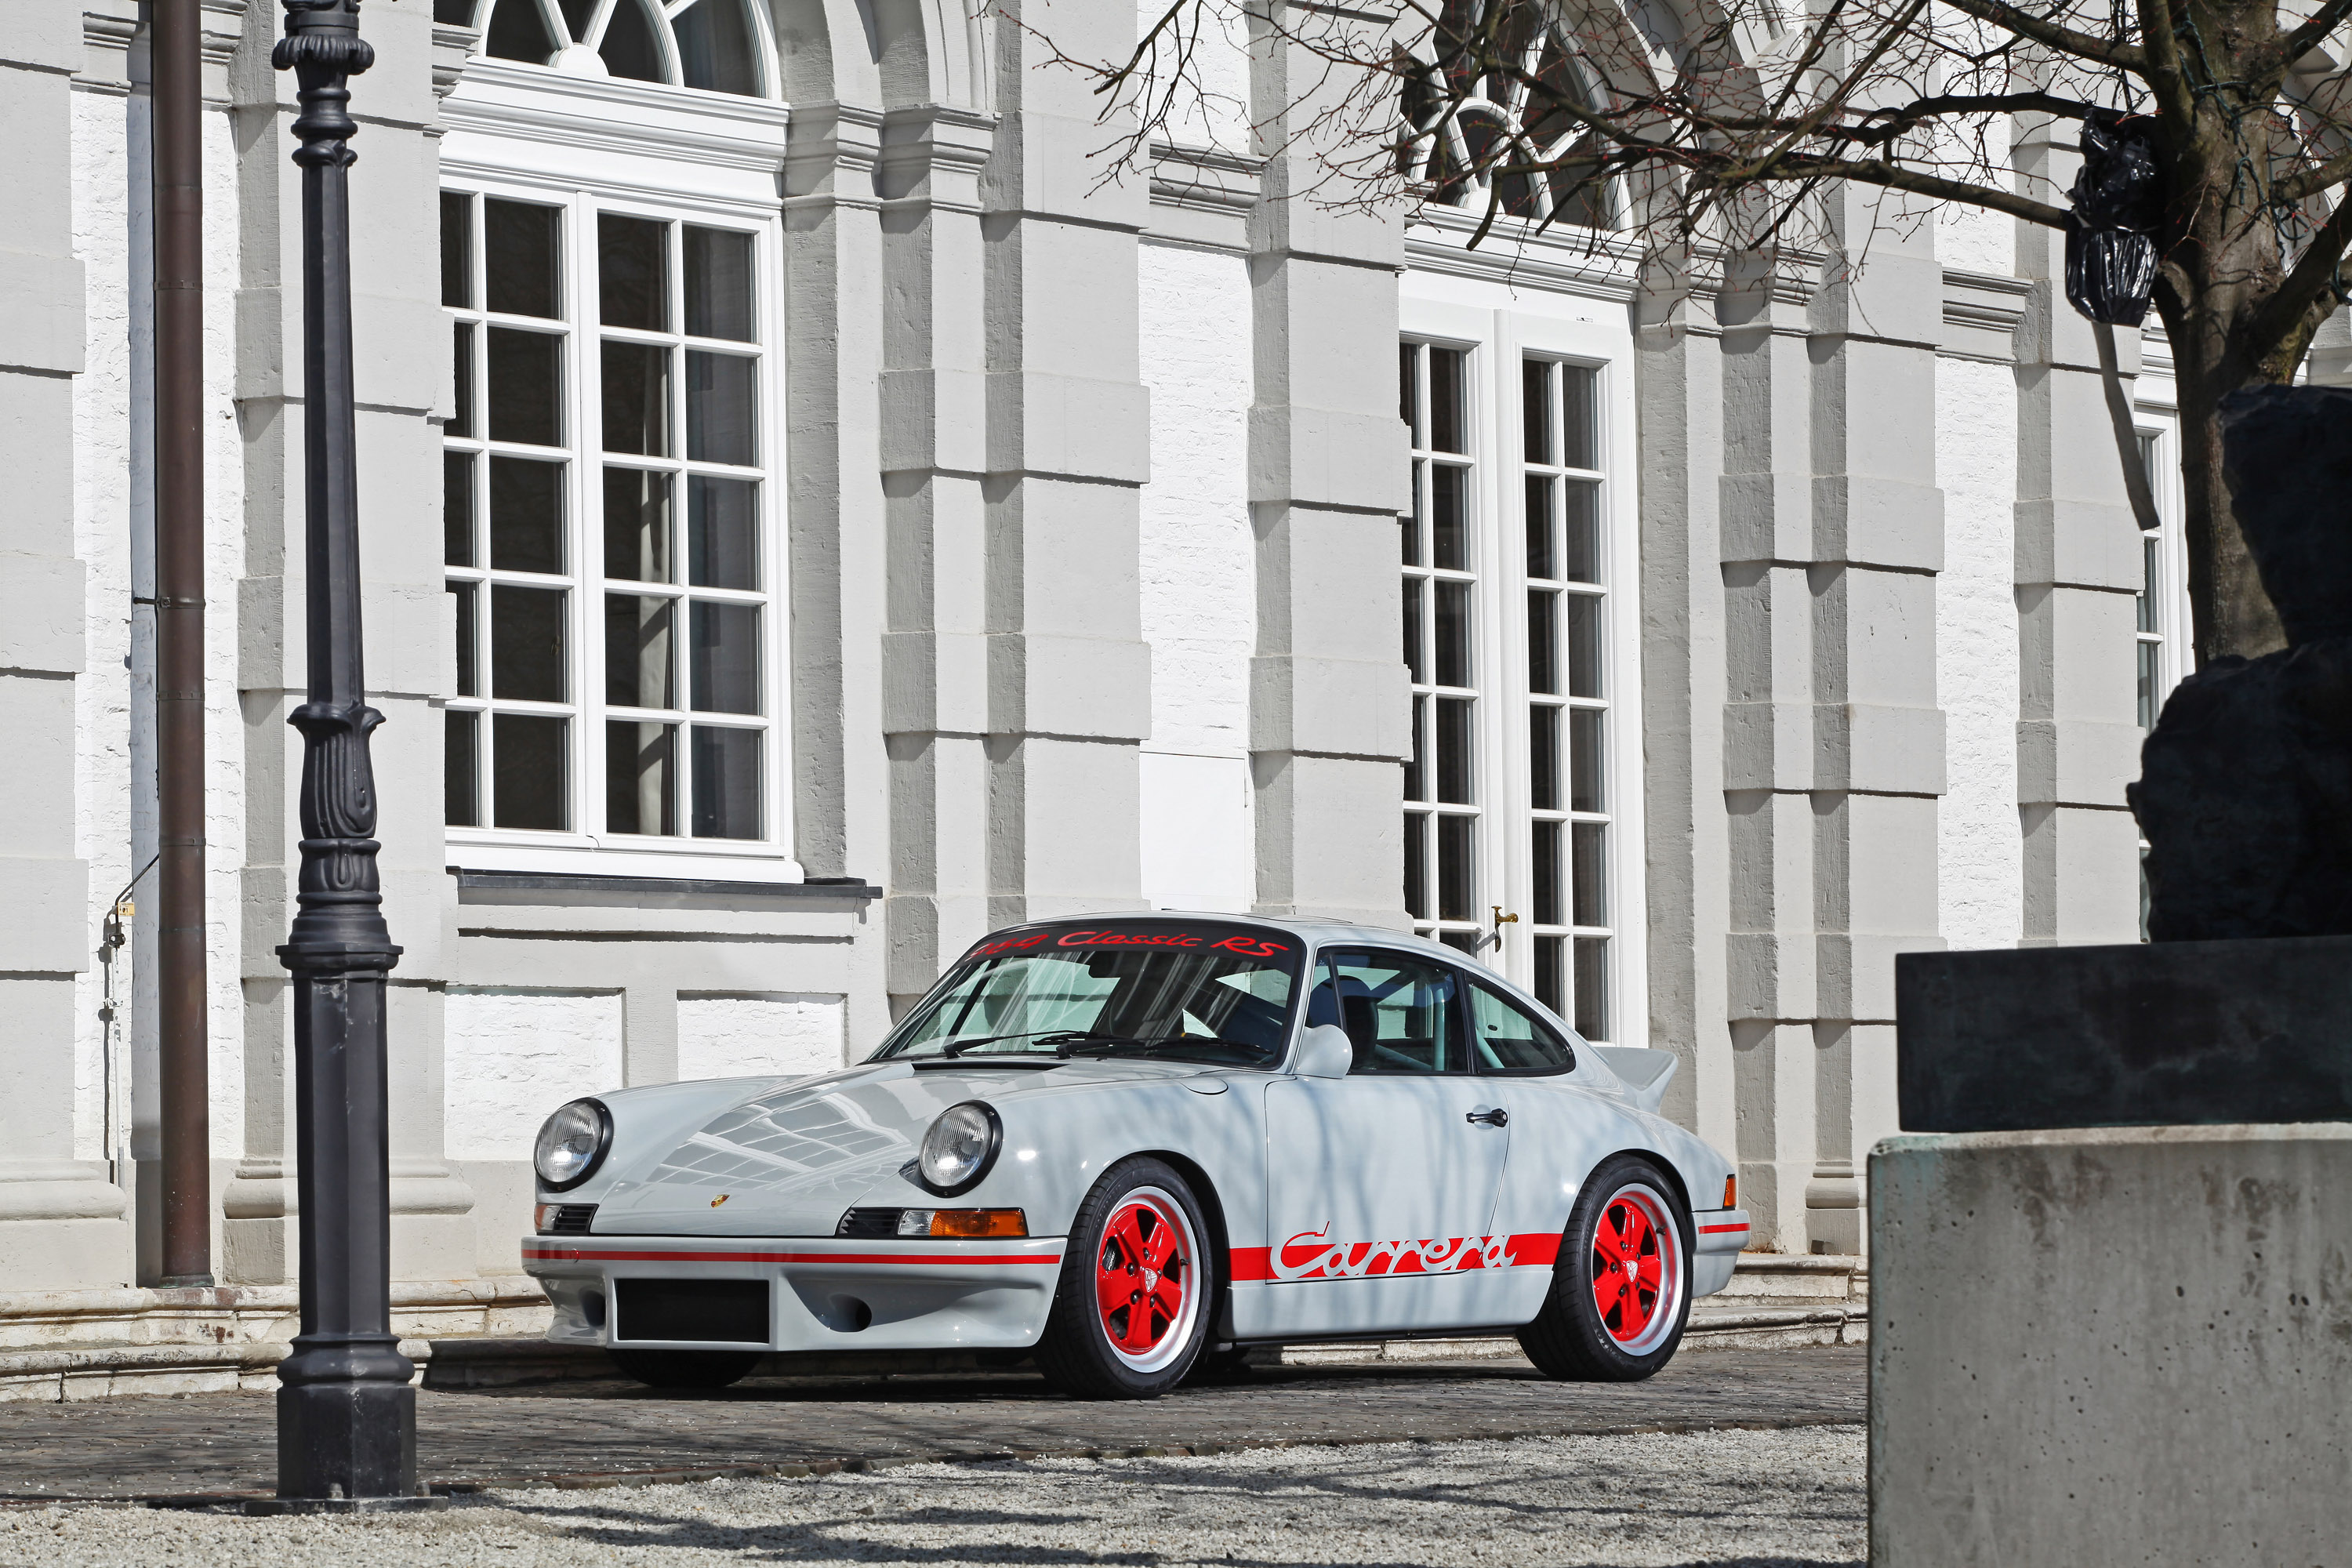 2013, Dp motorsport, Porsche, 964, Rs, Tuning Wallpaper